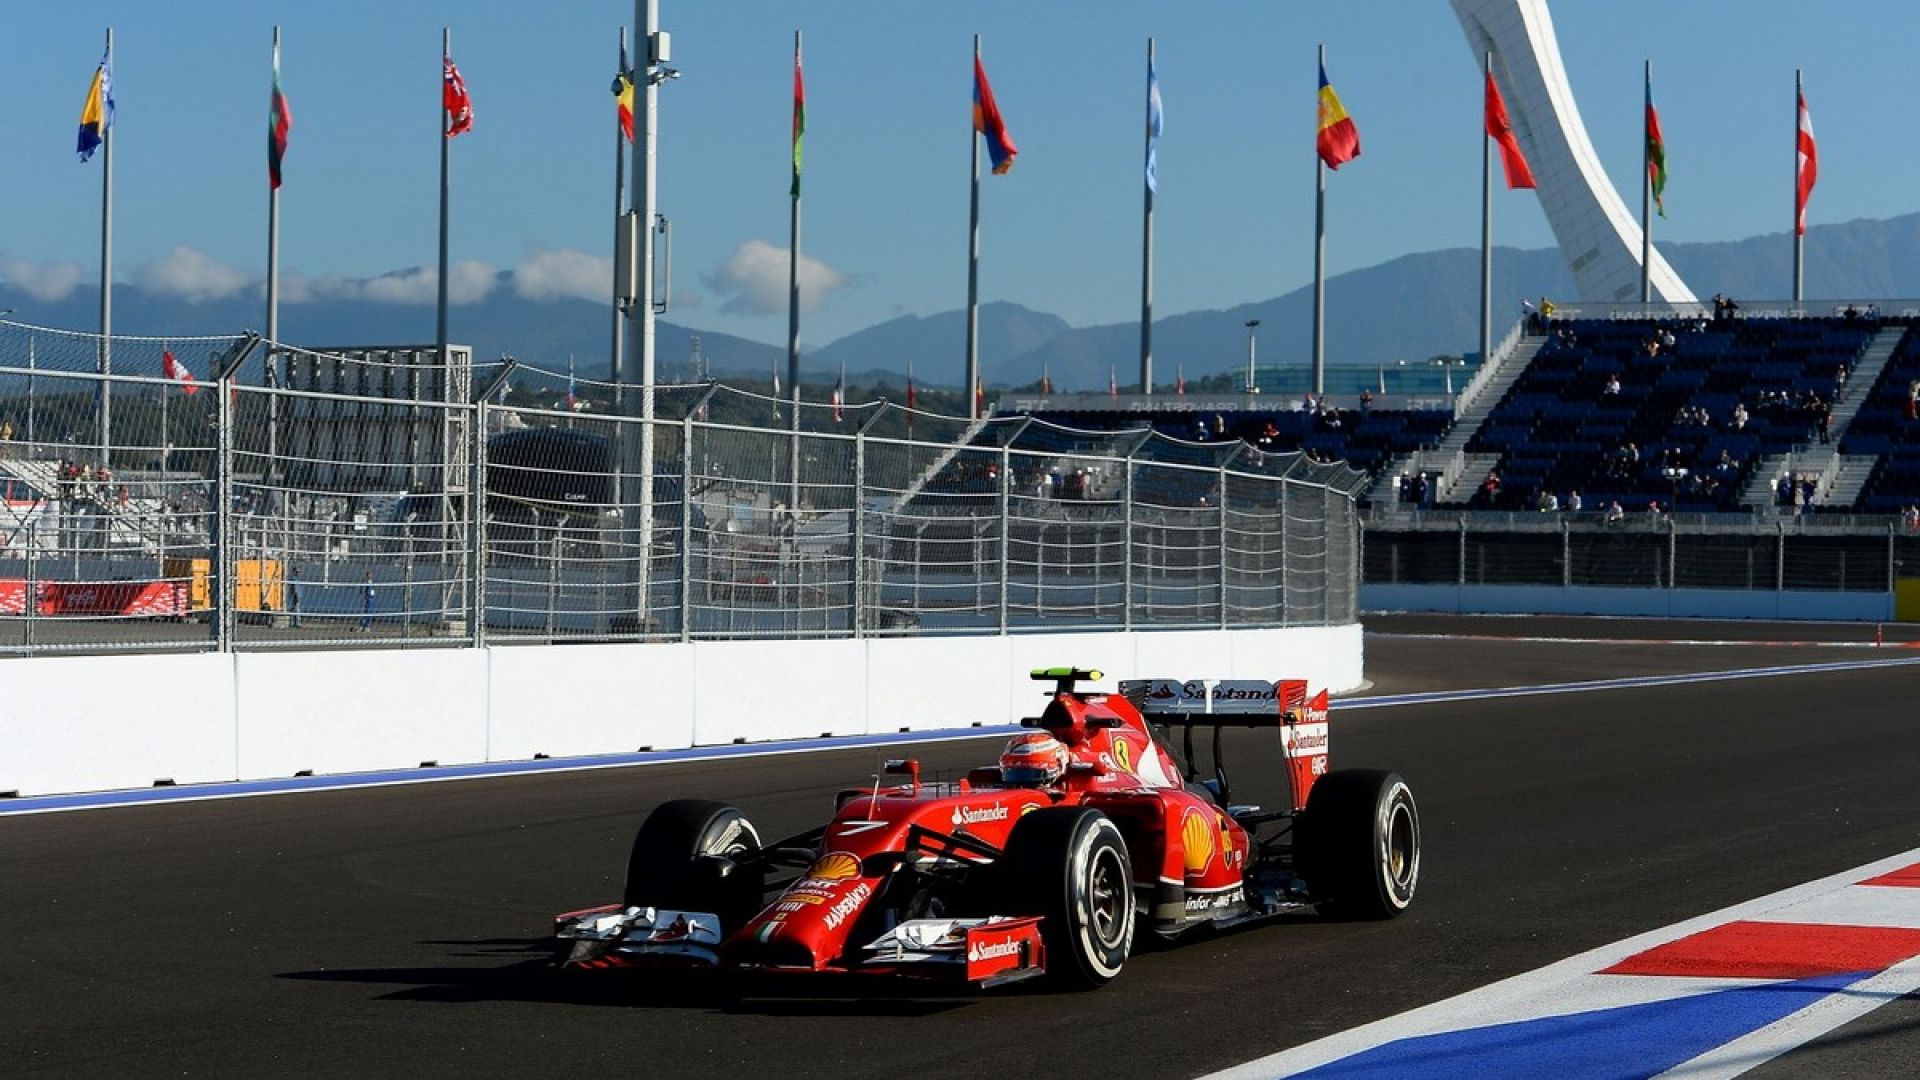 1 этап формулы 1 2019. F1 Сочи 2021. Формула 1 Феррари 2014. Трасса формулы 1 в Сочи. Сочи автодром формула 1 2020.